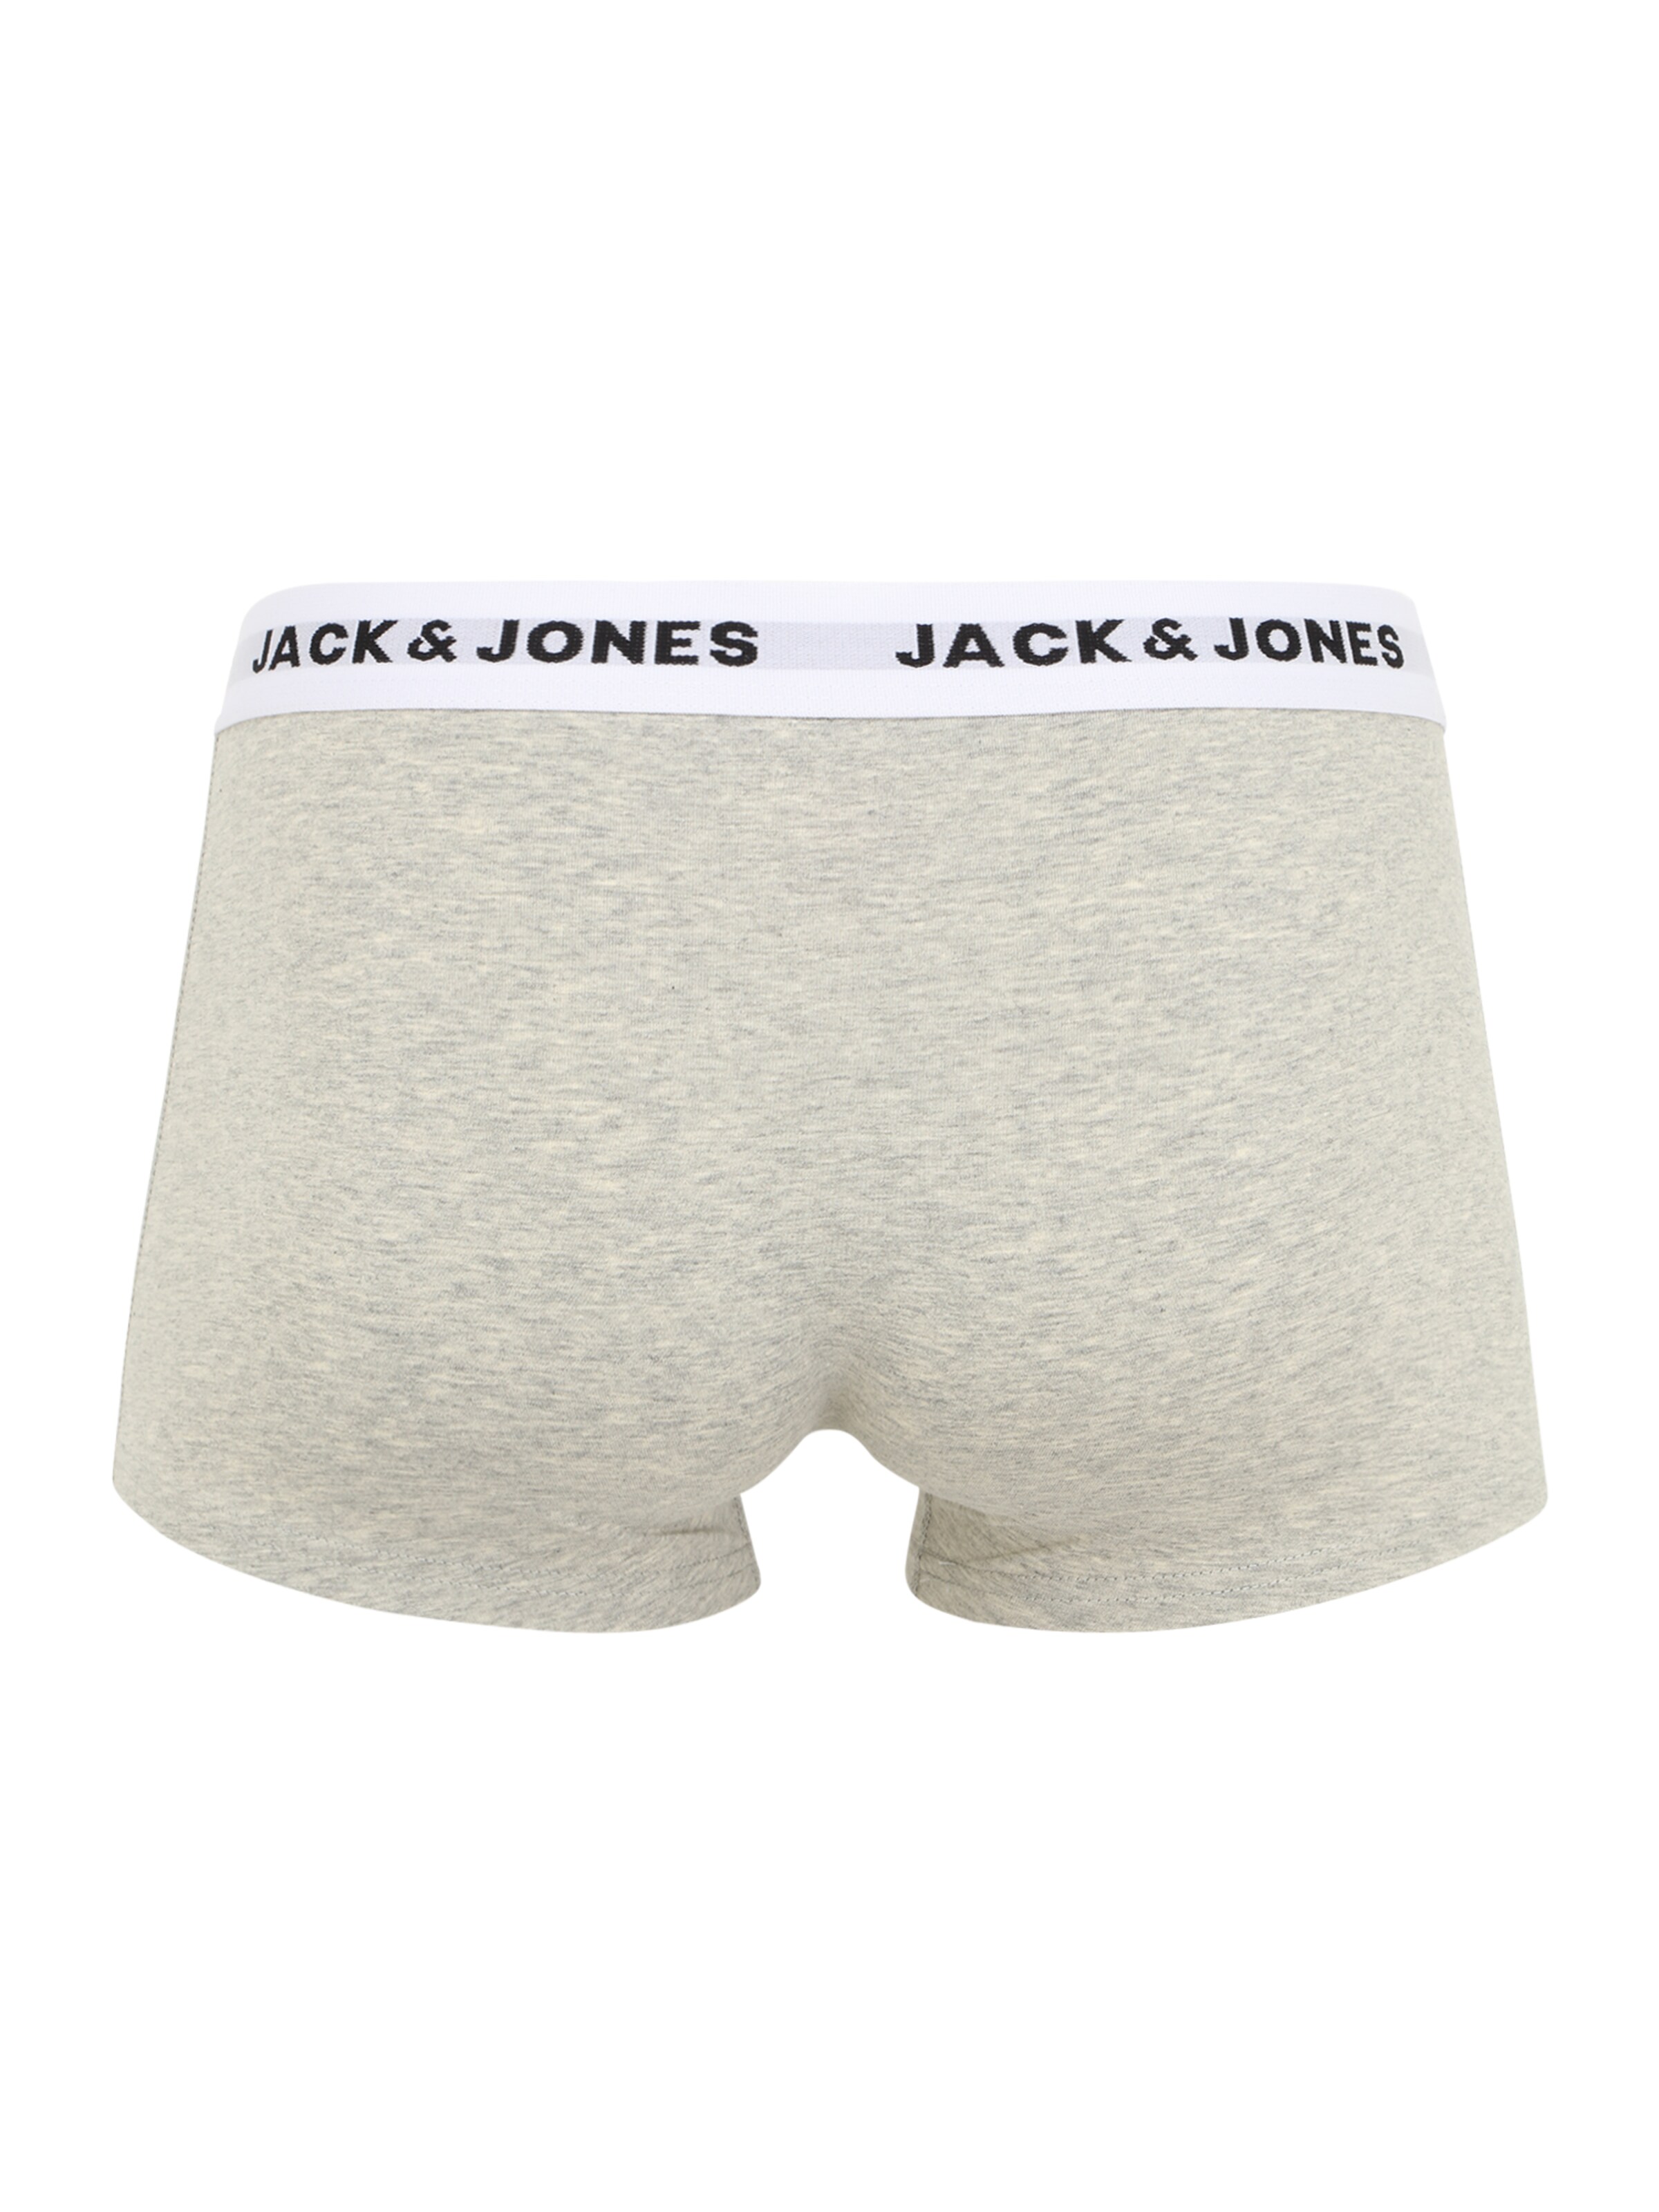 Jack & Jones Boxers S Mélange De Couleurs